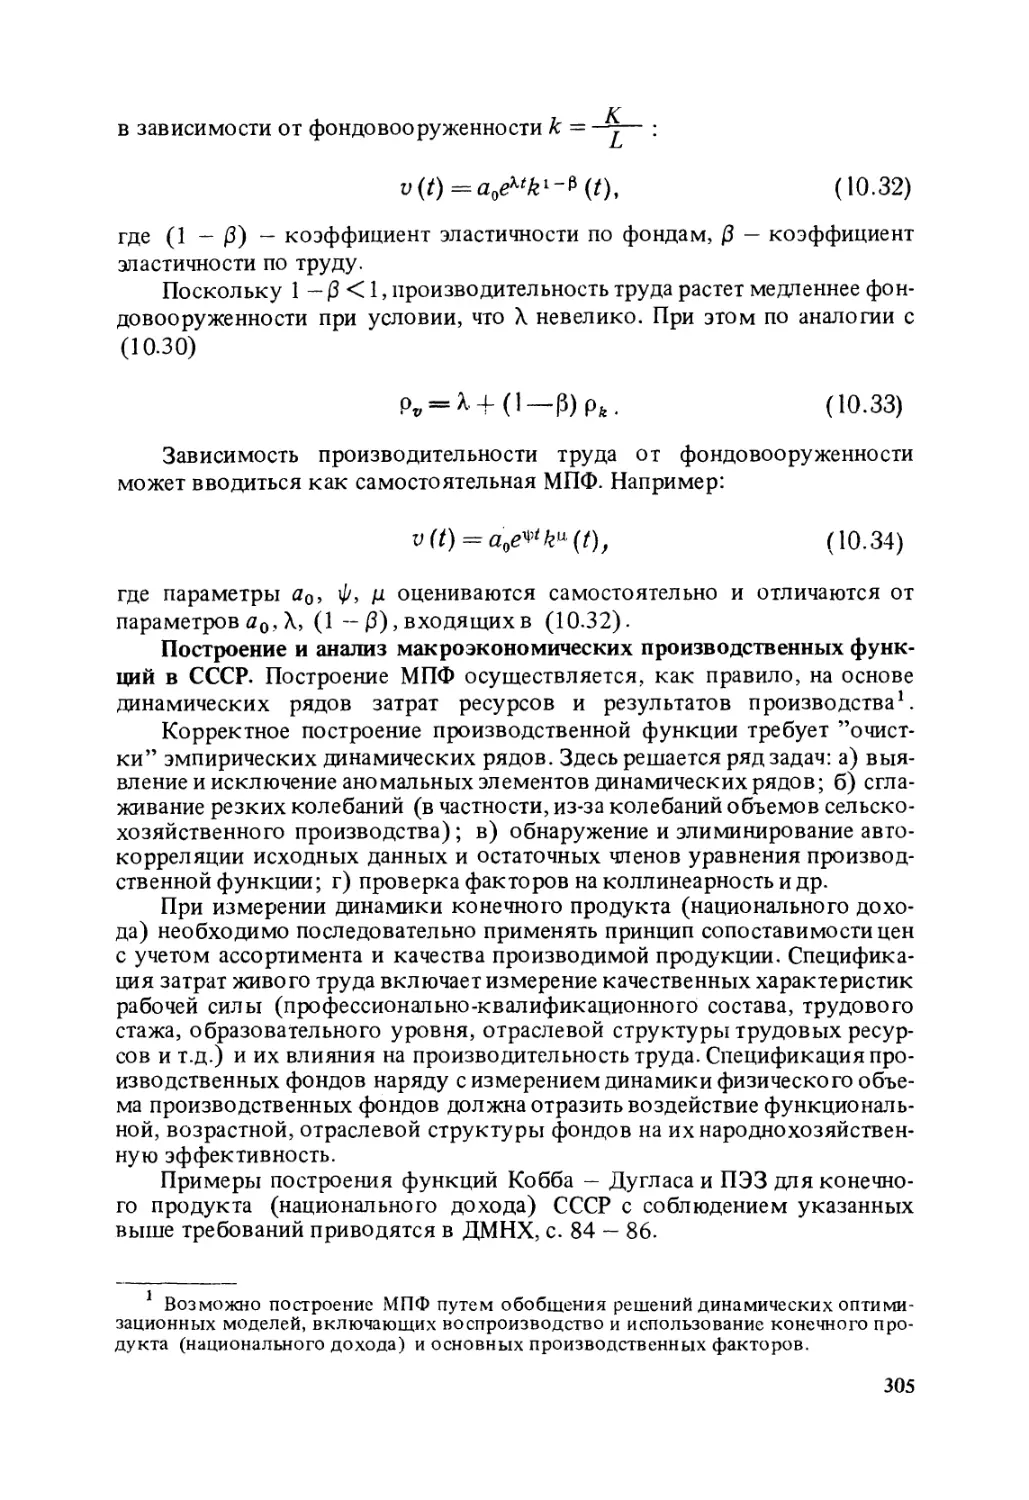 Построение и анализ макроэкономических производственных функций в СССР